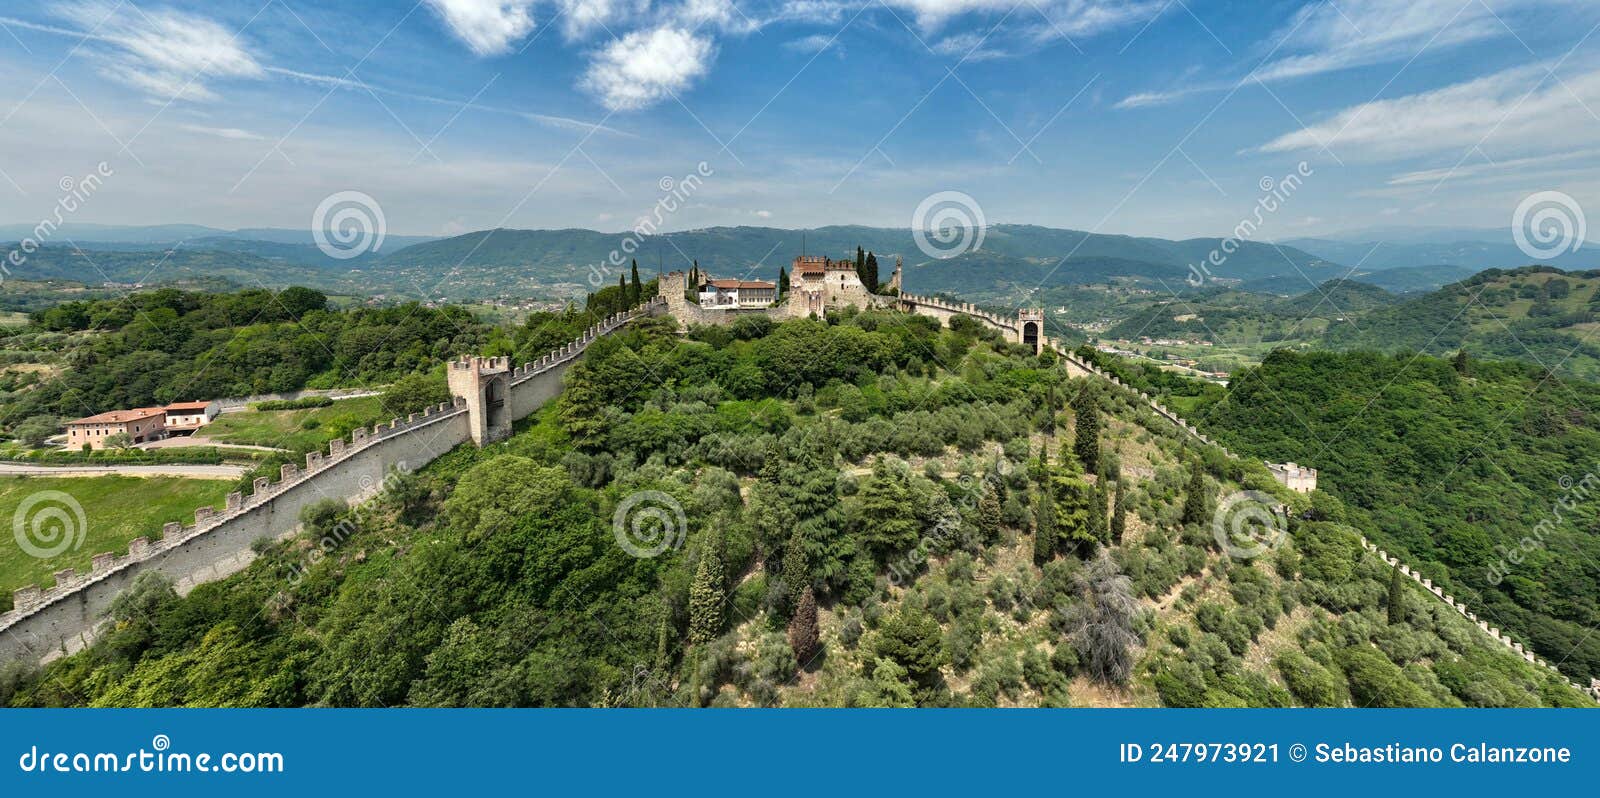 castello superiore di marostica visto dall`alto in una panoramica aerea